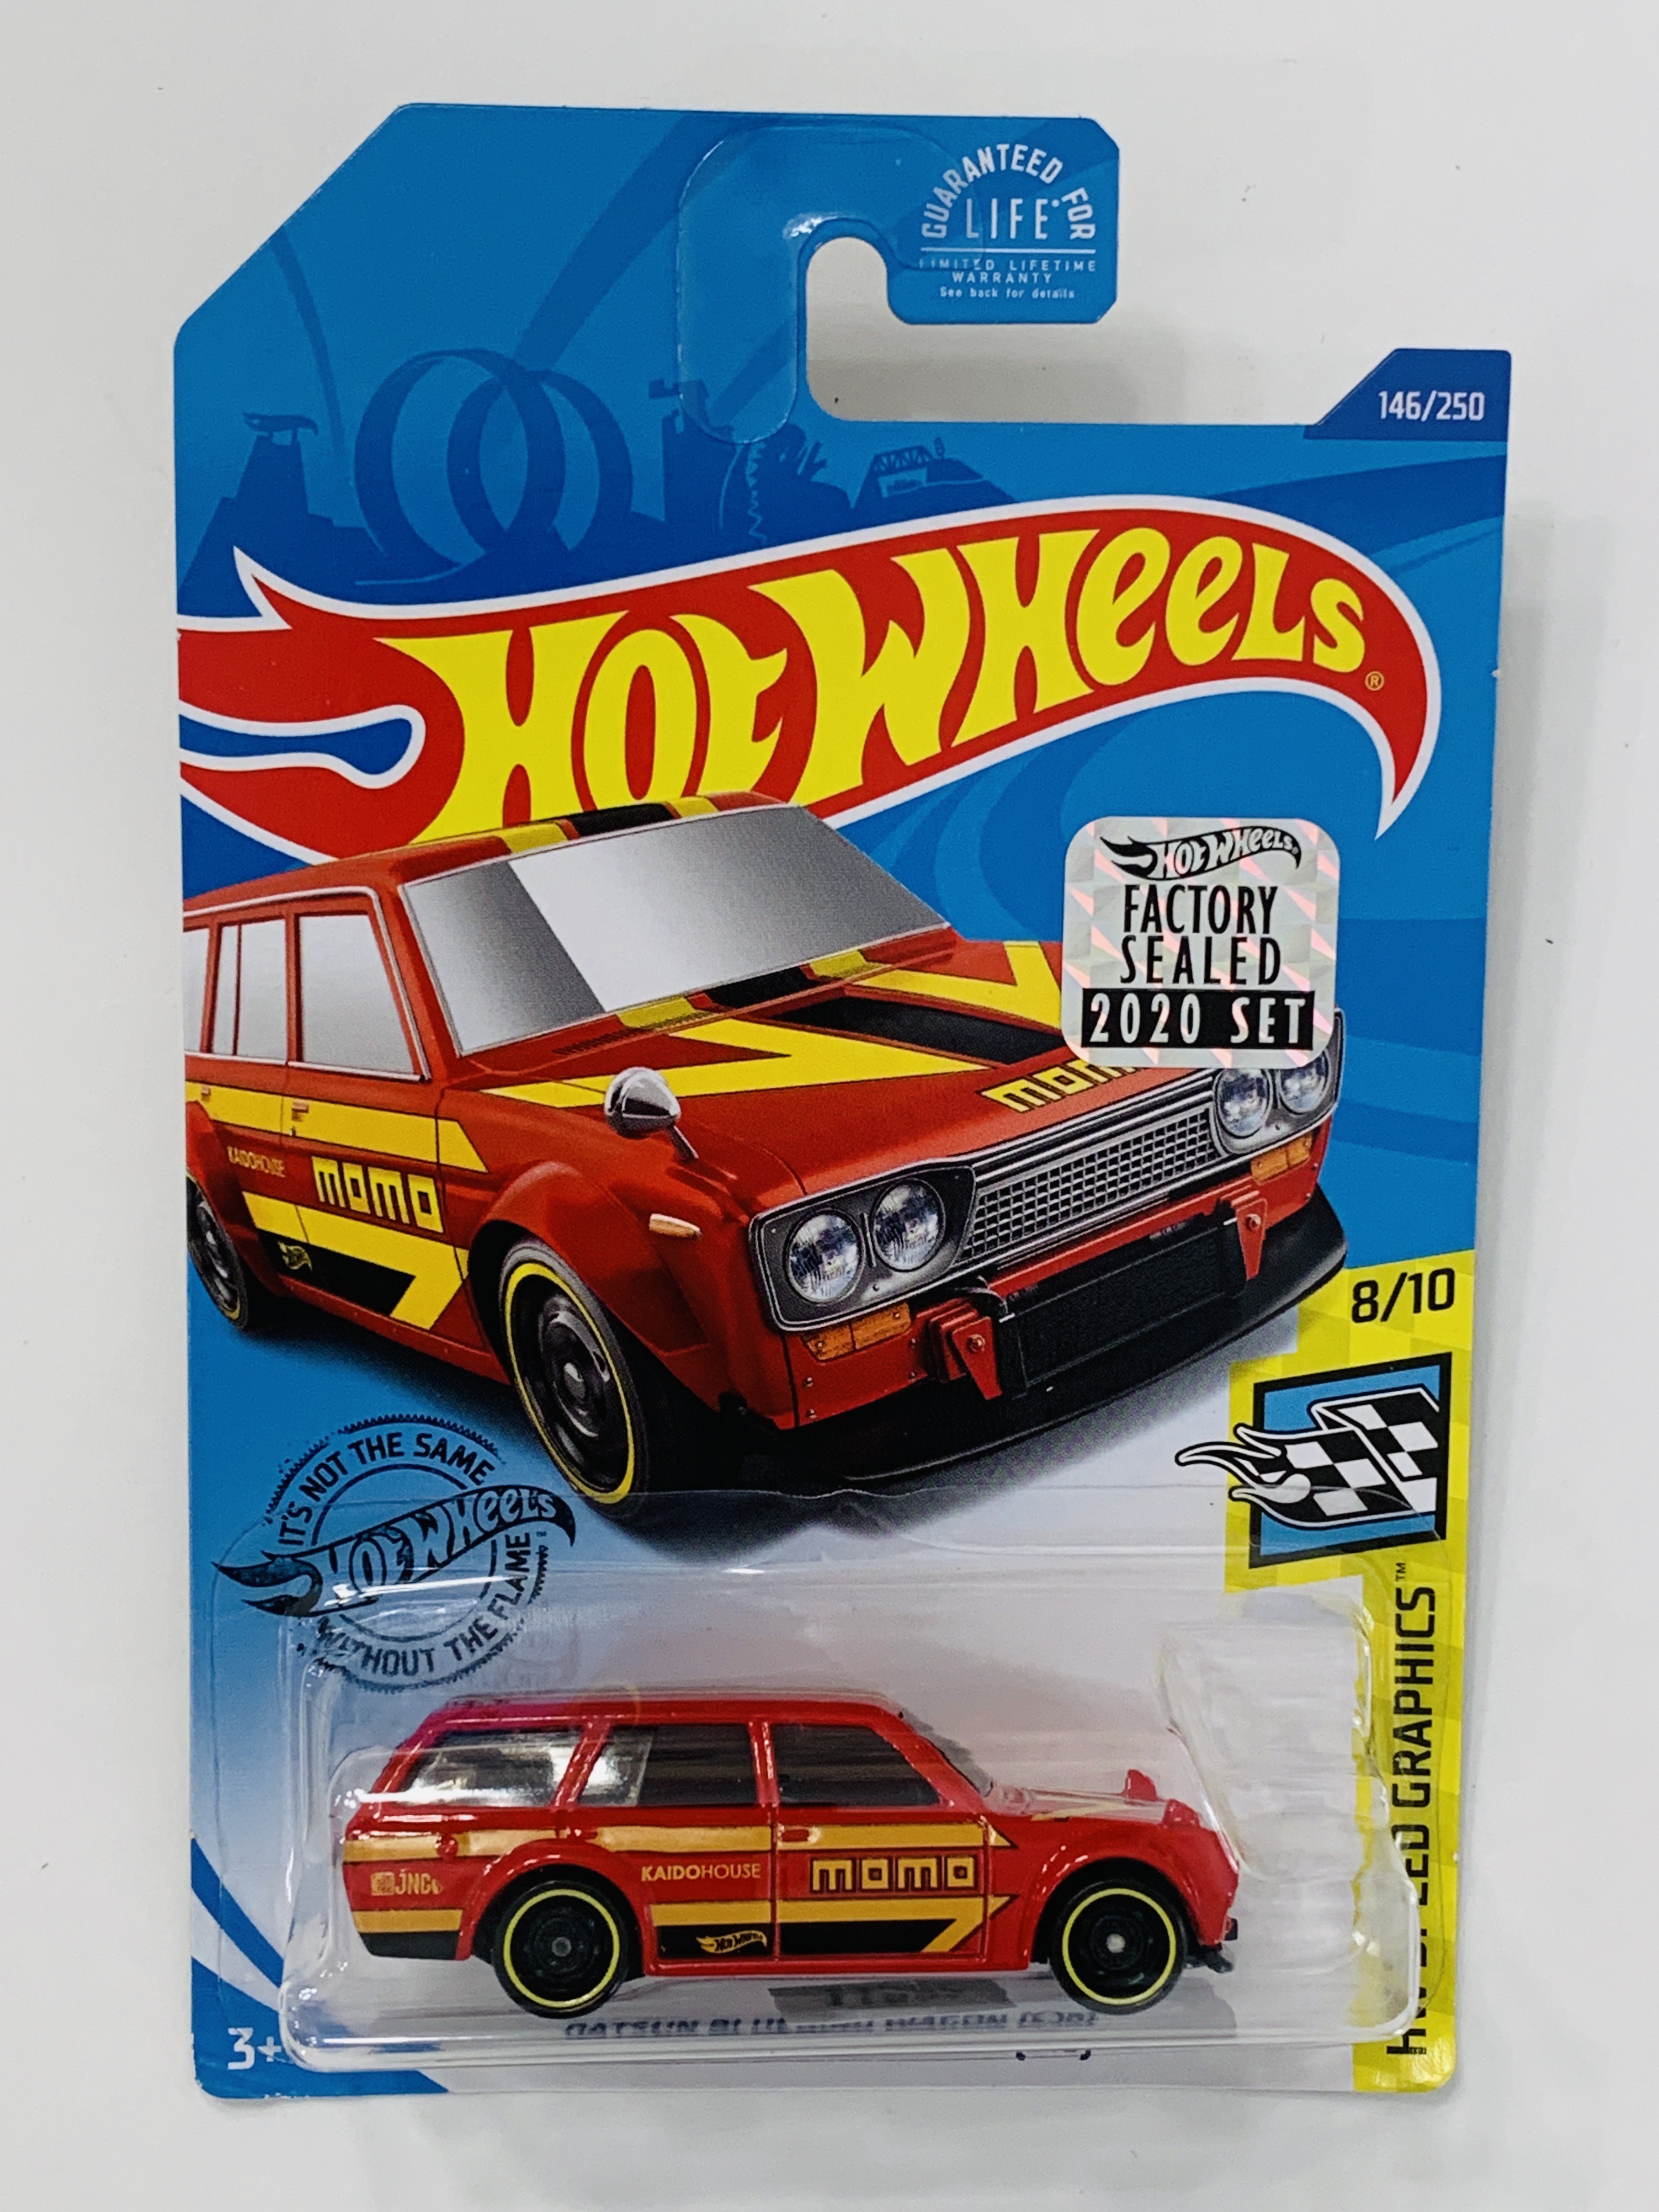 Hot Wheels 2020 Factory Set #146 Datsun Bluebird Wagon (510) - Red